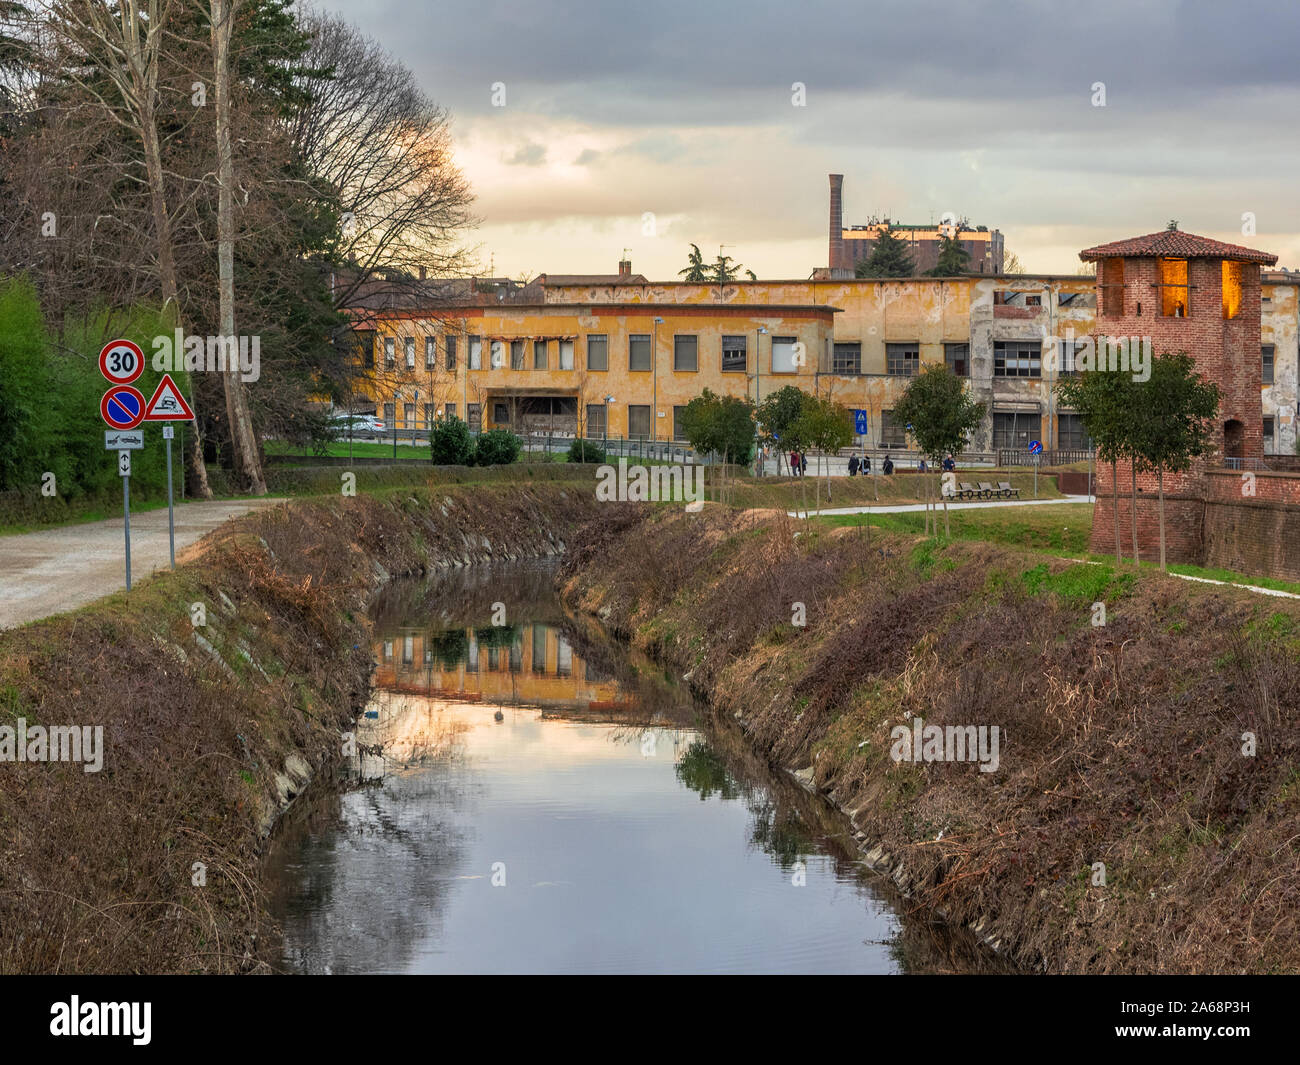 Ciclo pedonali percorsi lungo le rive del fiume in un parco in Lombardia, Italia Foto Stock